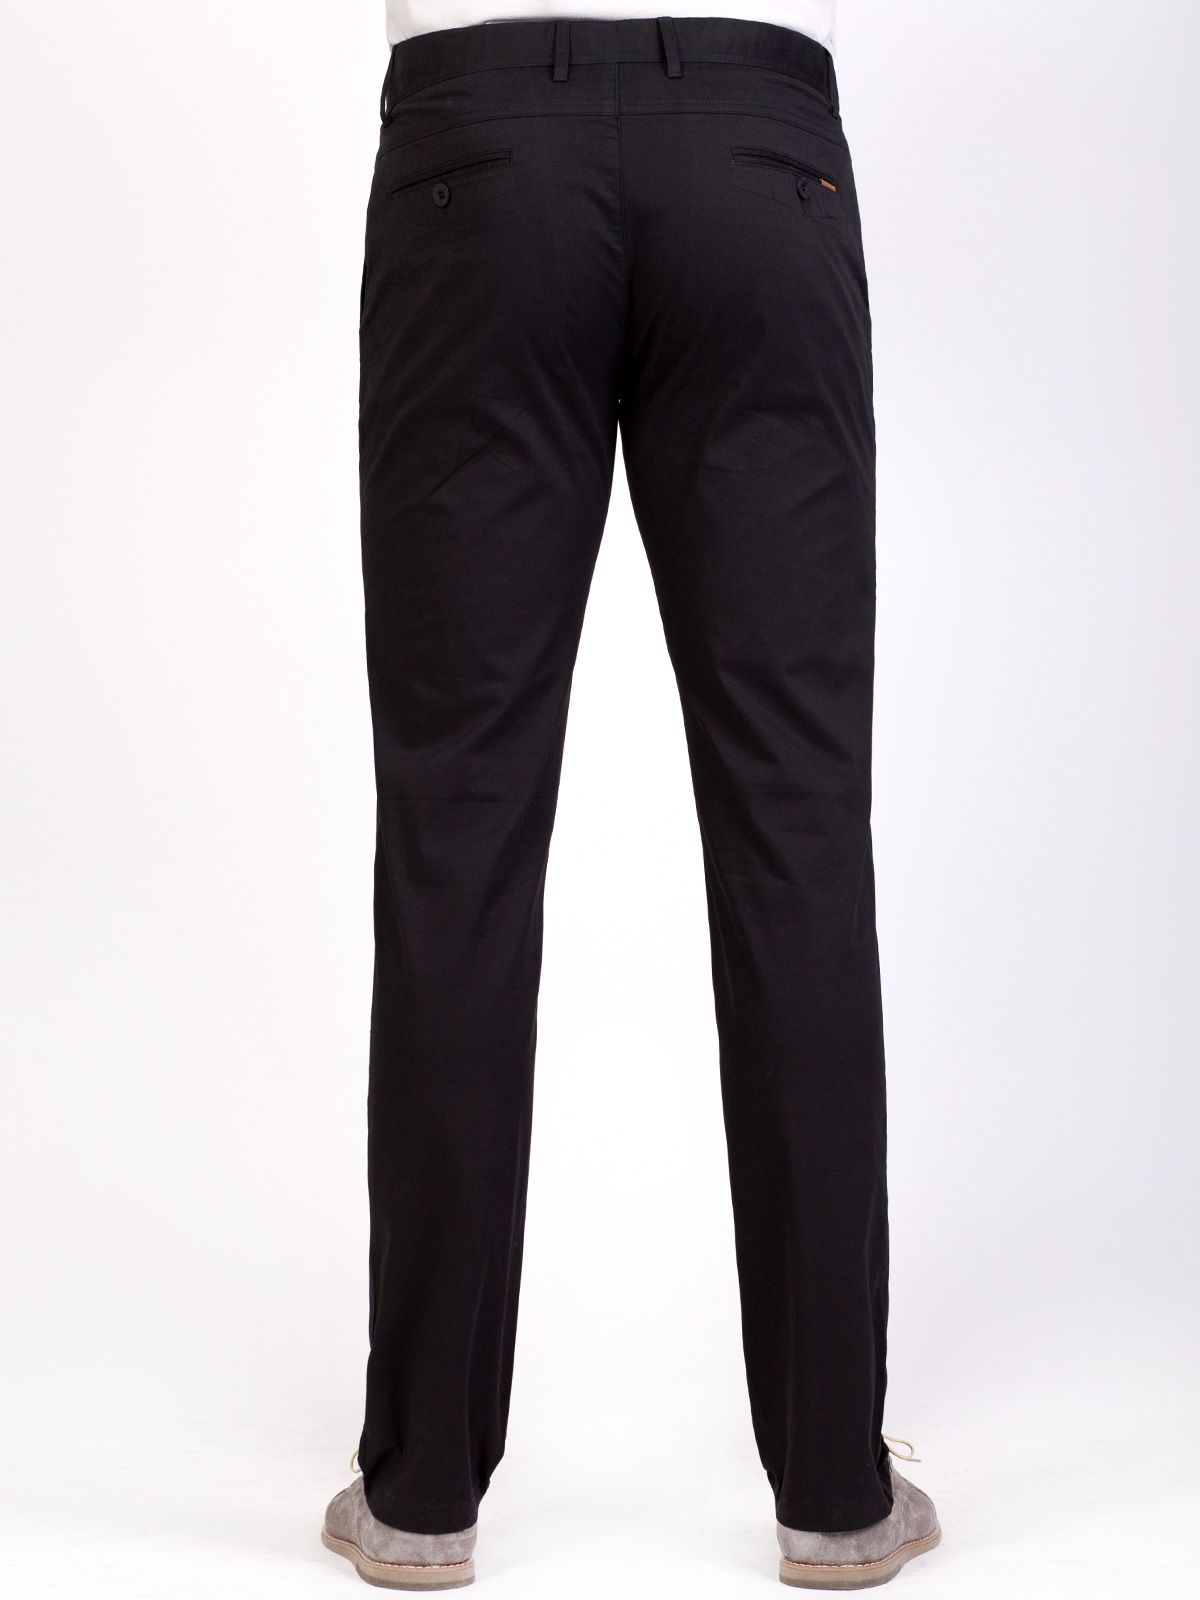  παντελόνι σε μαύρο βαμβάκι με ελαστάνη  - 63229 € 11.25 img3